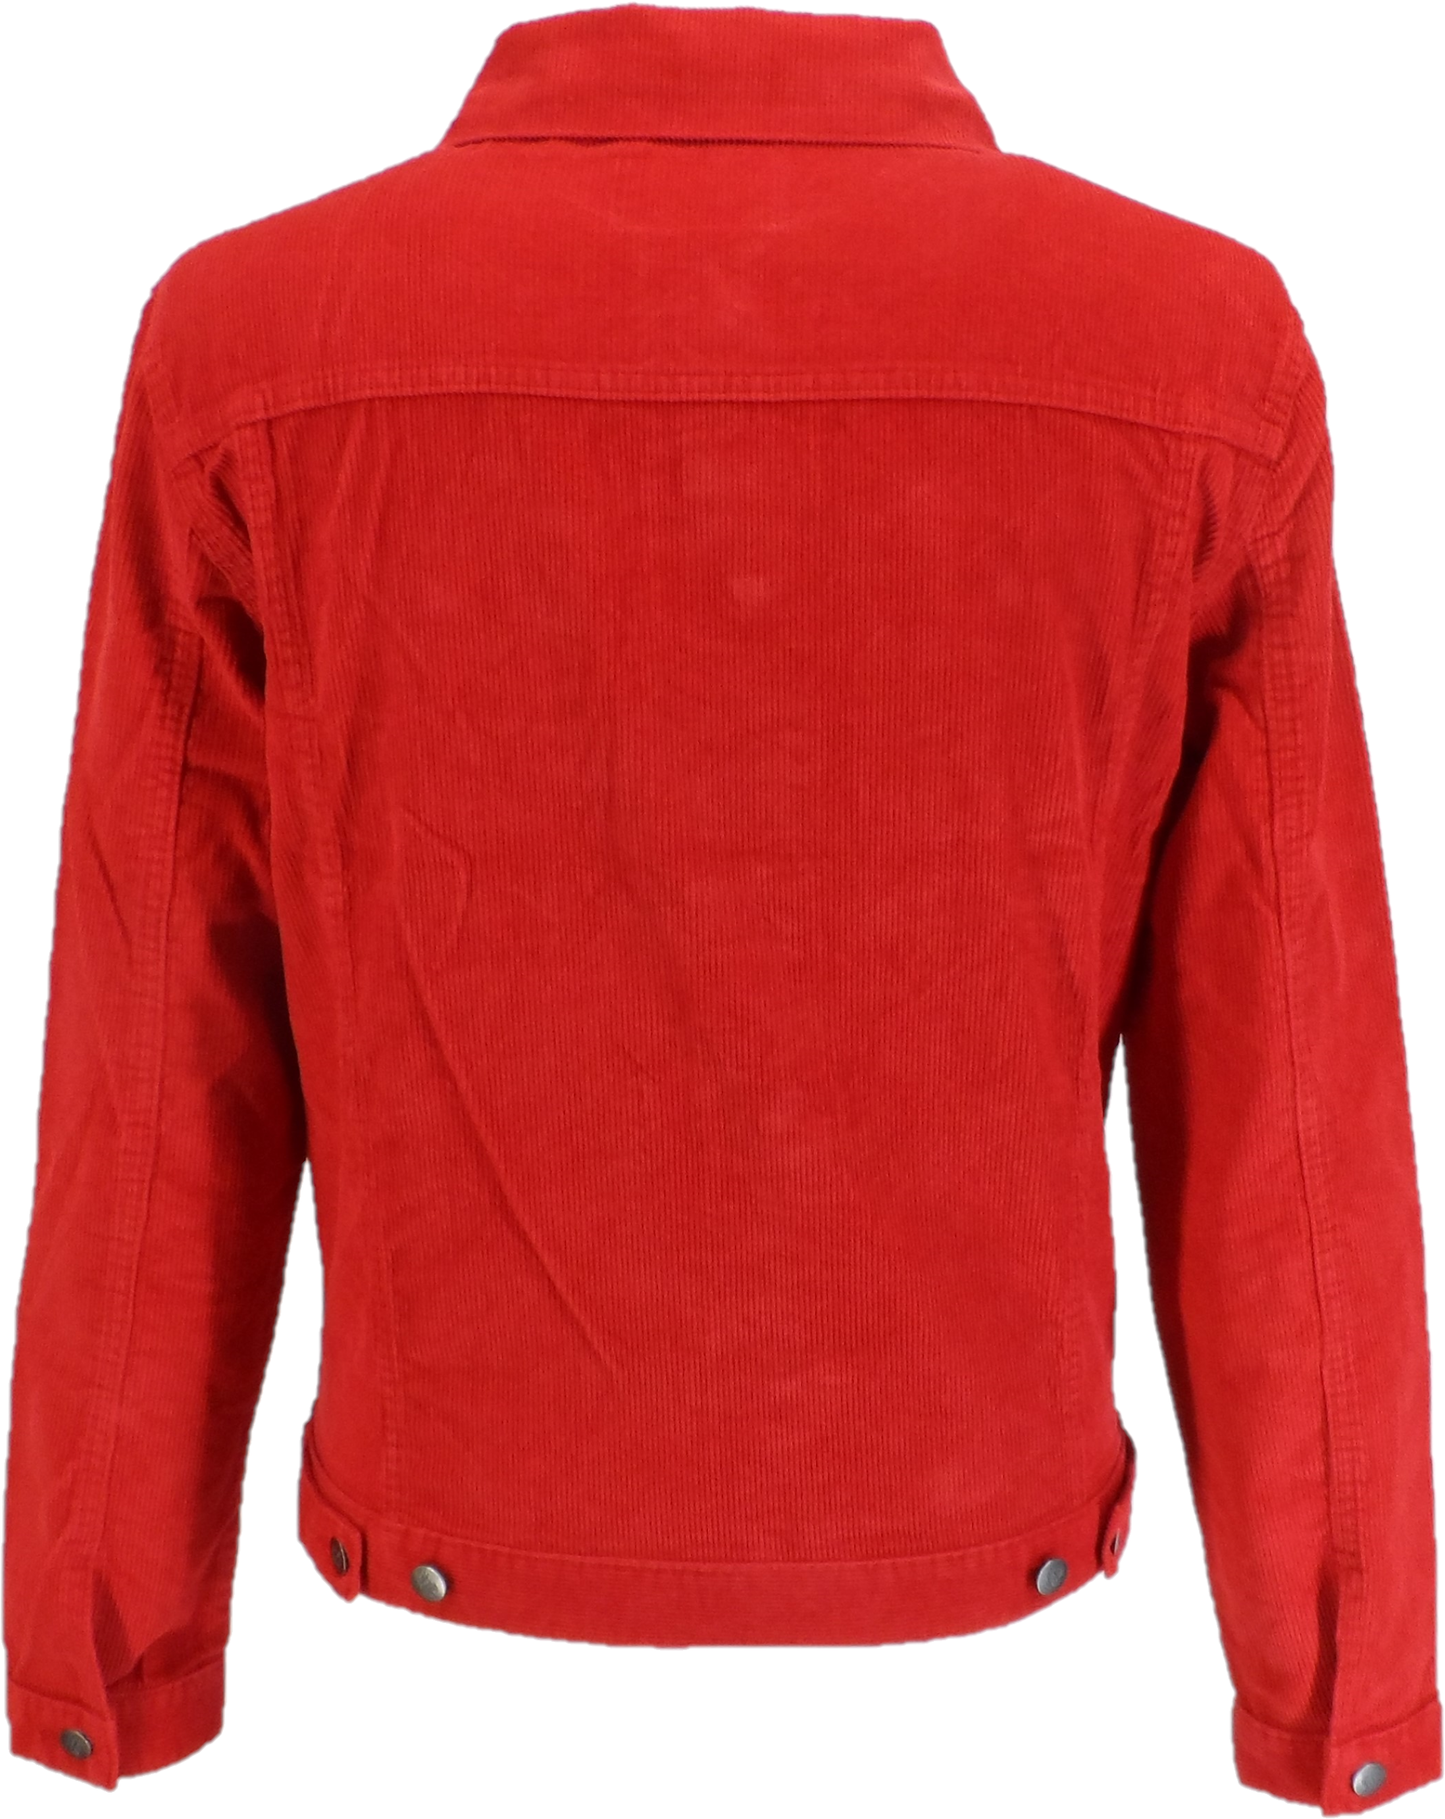 Run & Fly chaqueta de camionero occidental de cordón rojo retro vintage de los años 60 para hombre